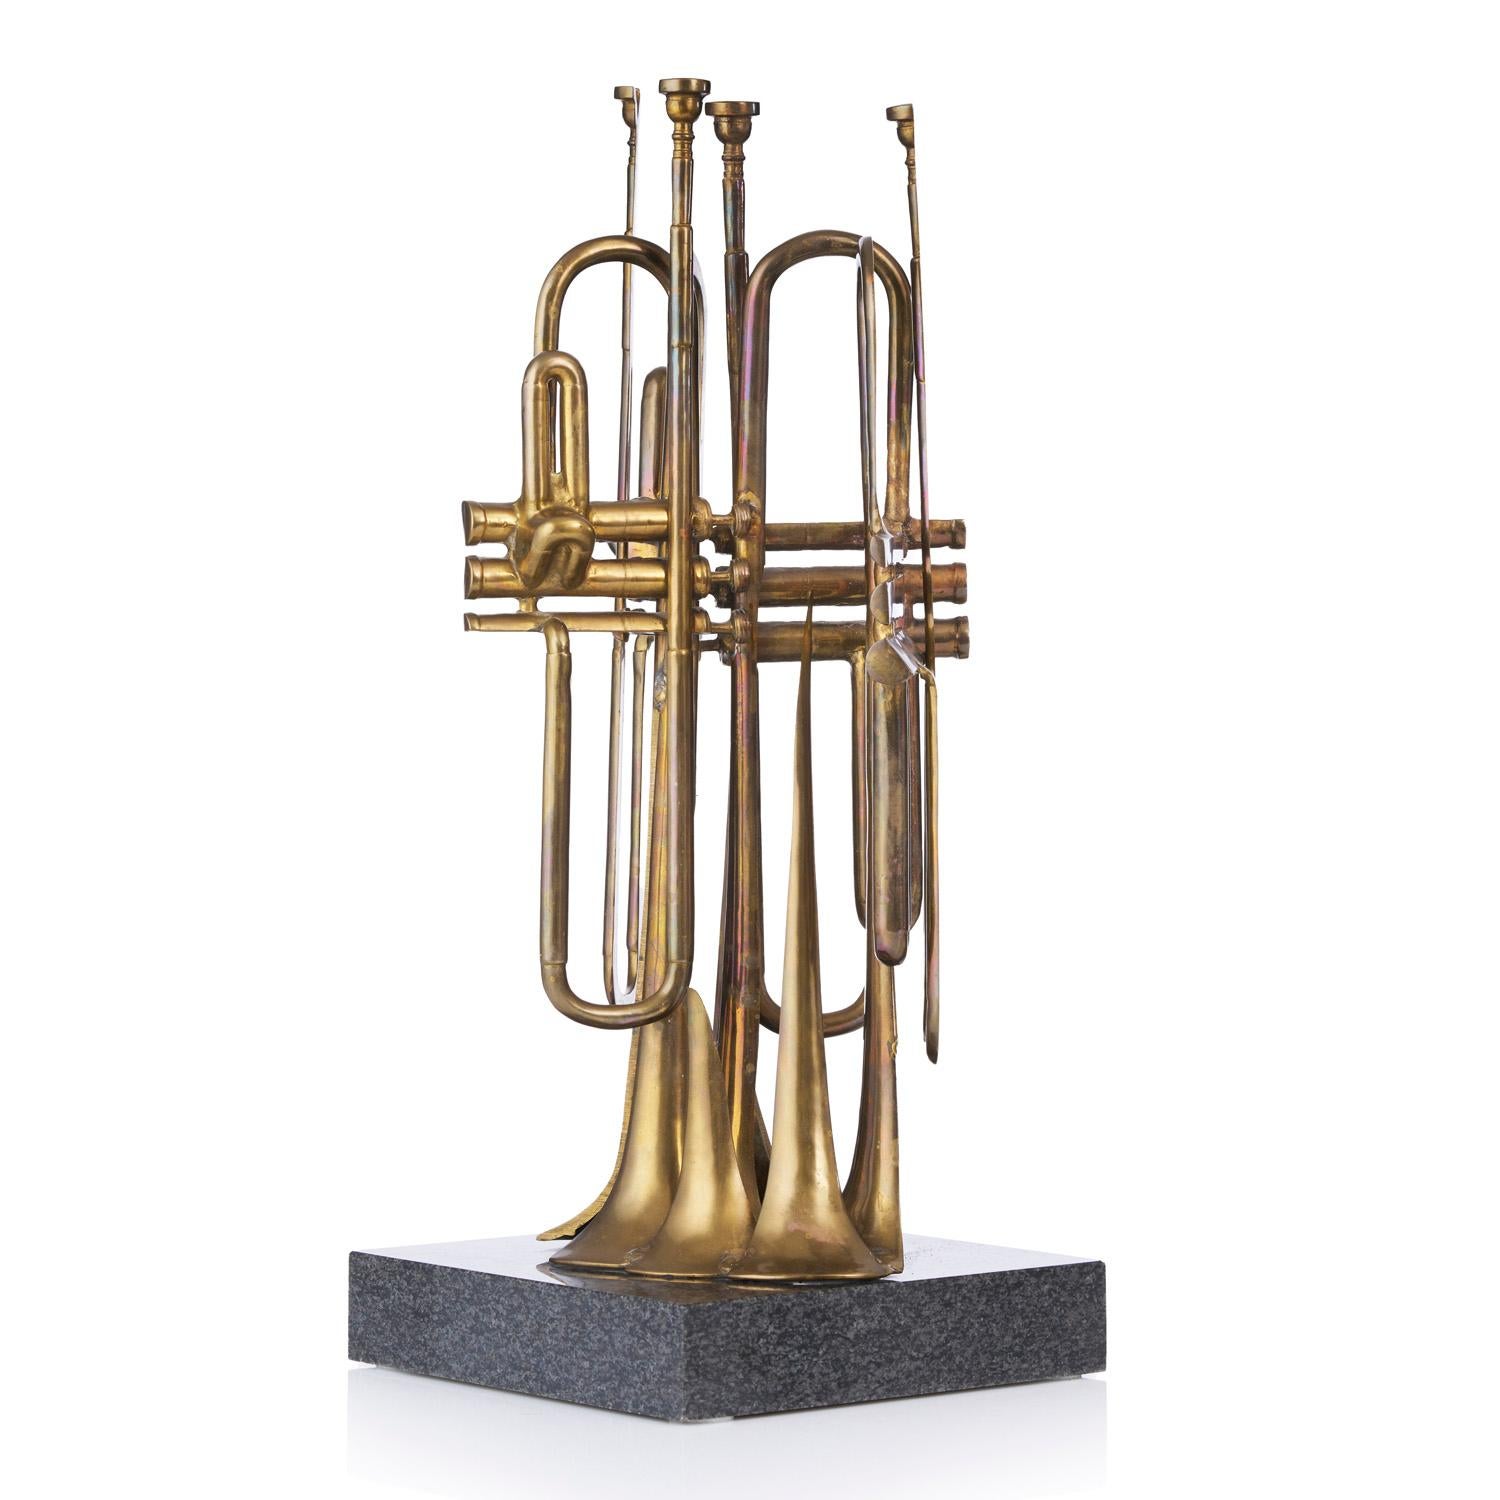 La trompette coupée - Contemporary Sculpture by Fernandez Arman